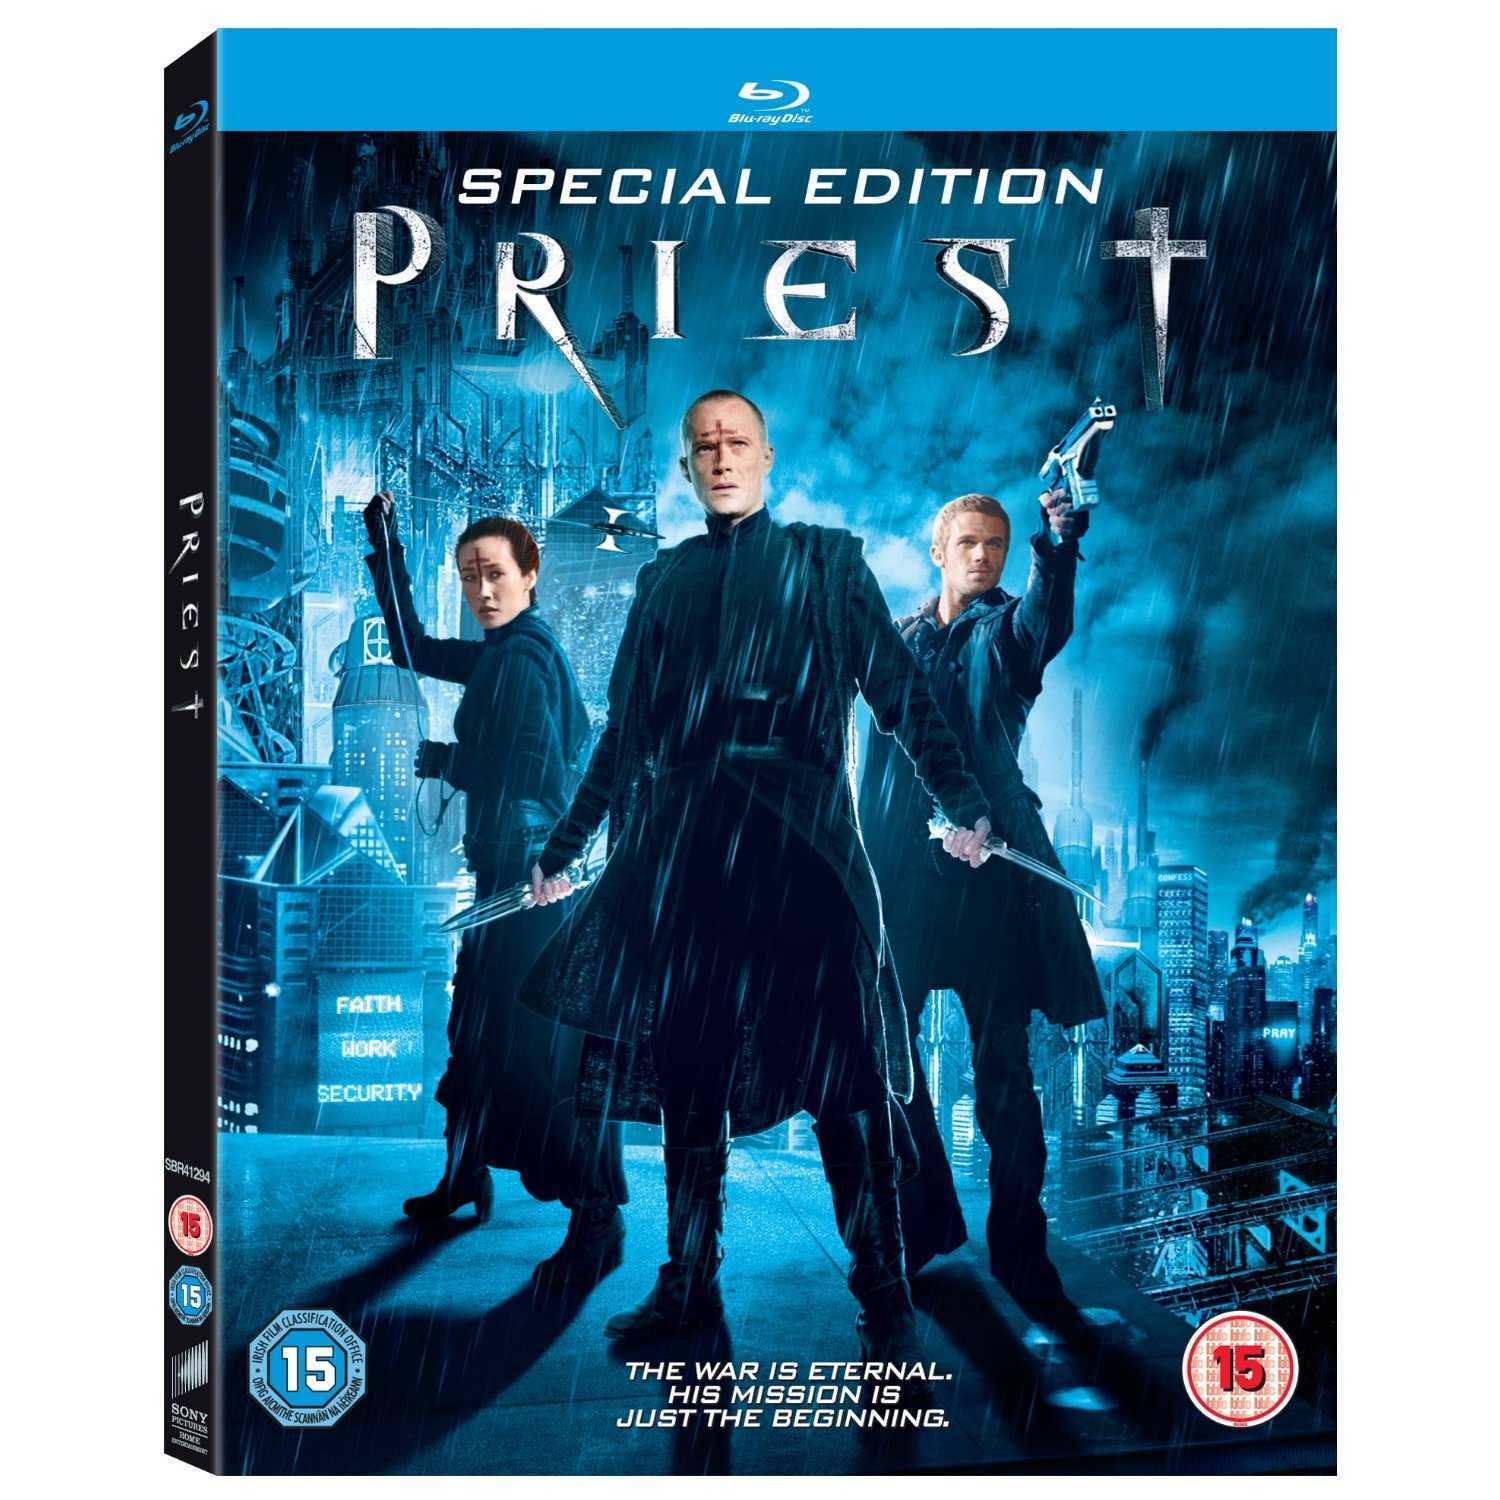 Priest (2011) HDRip 1080p DTS ITA AC3 ENG Sub - DDN